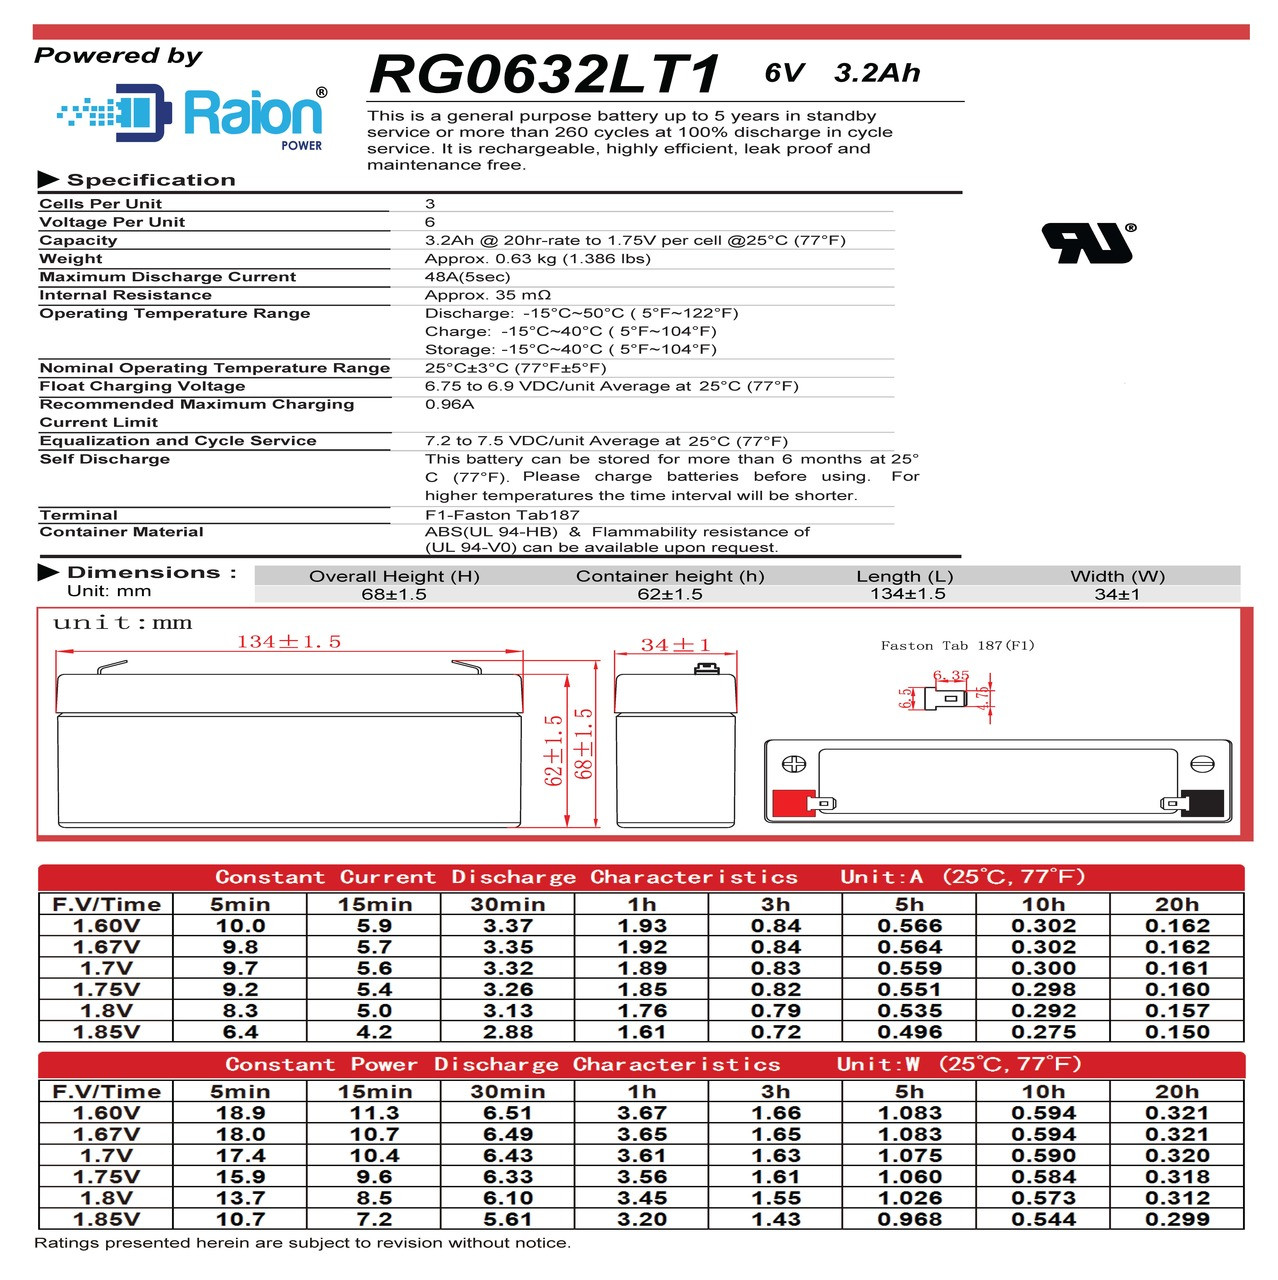 Raion Power RG0632LT1 6V 3.2Ah Battery Data Sheet for Health o meter 592 Scale